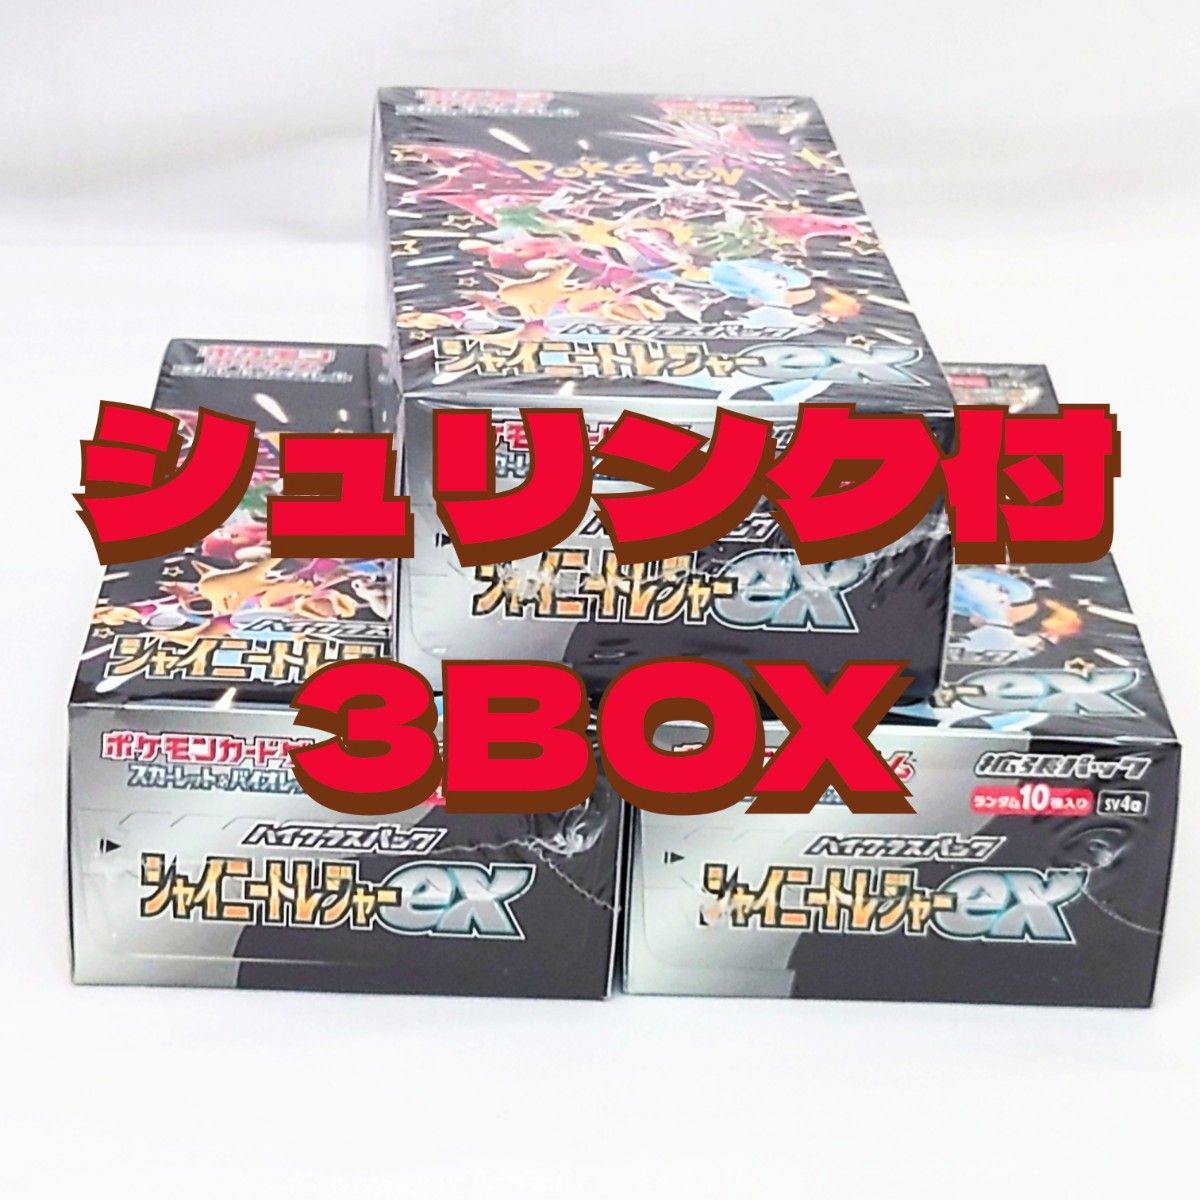 シャイニートレジャーex 未開封BOX シュリンク付き 3BOX BOX ボックス